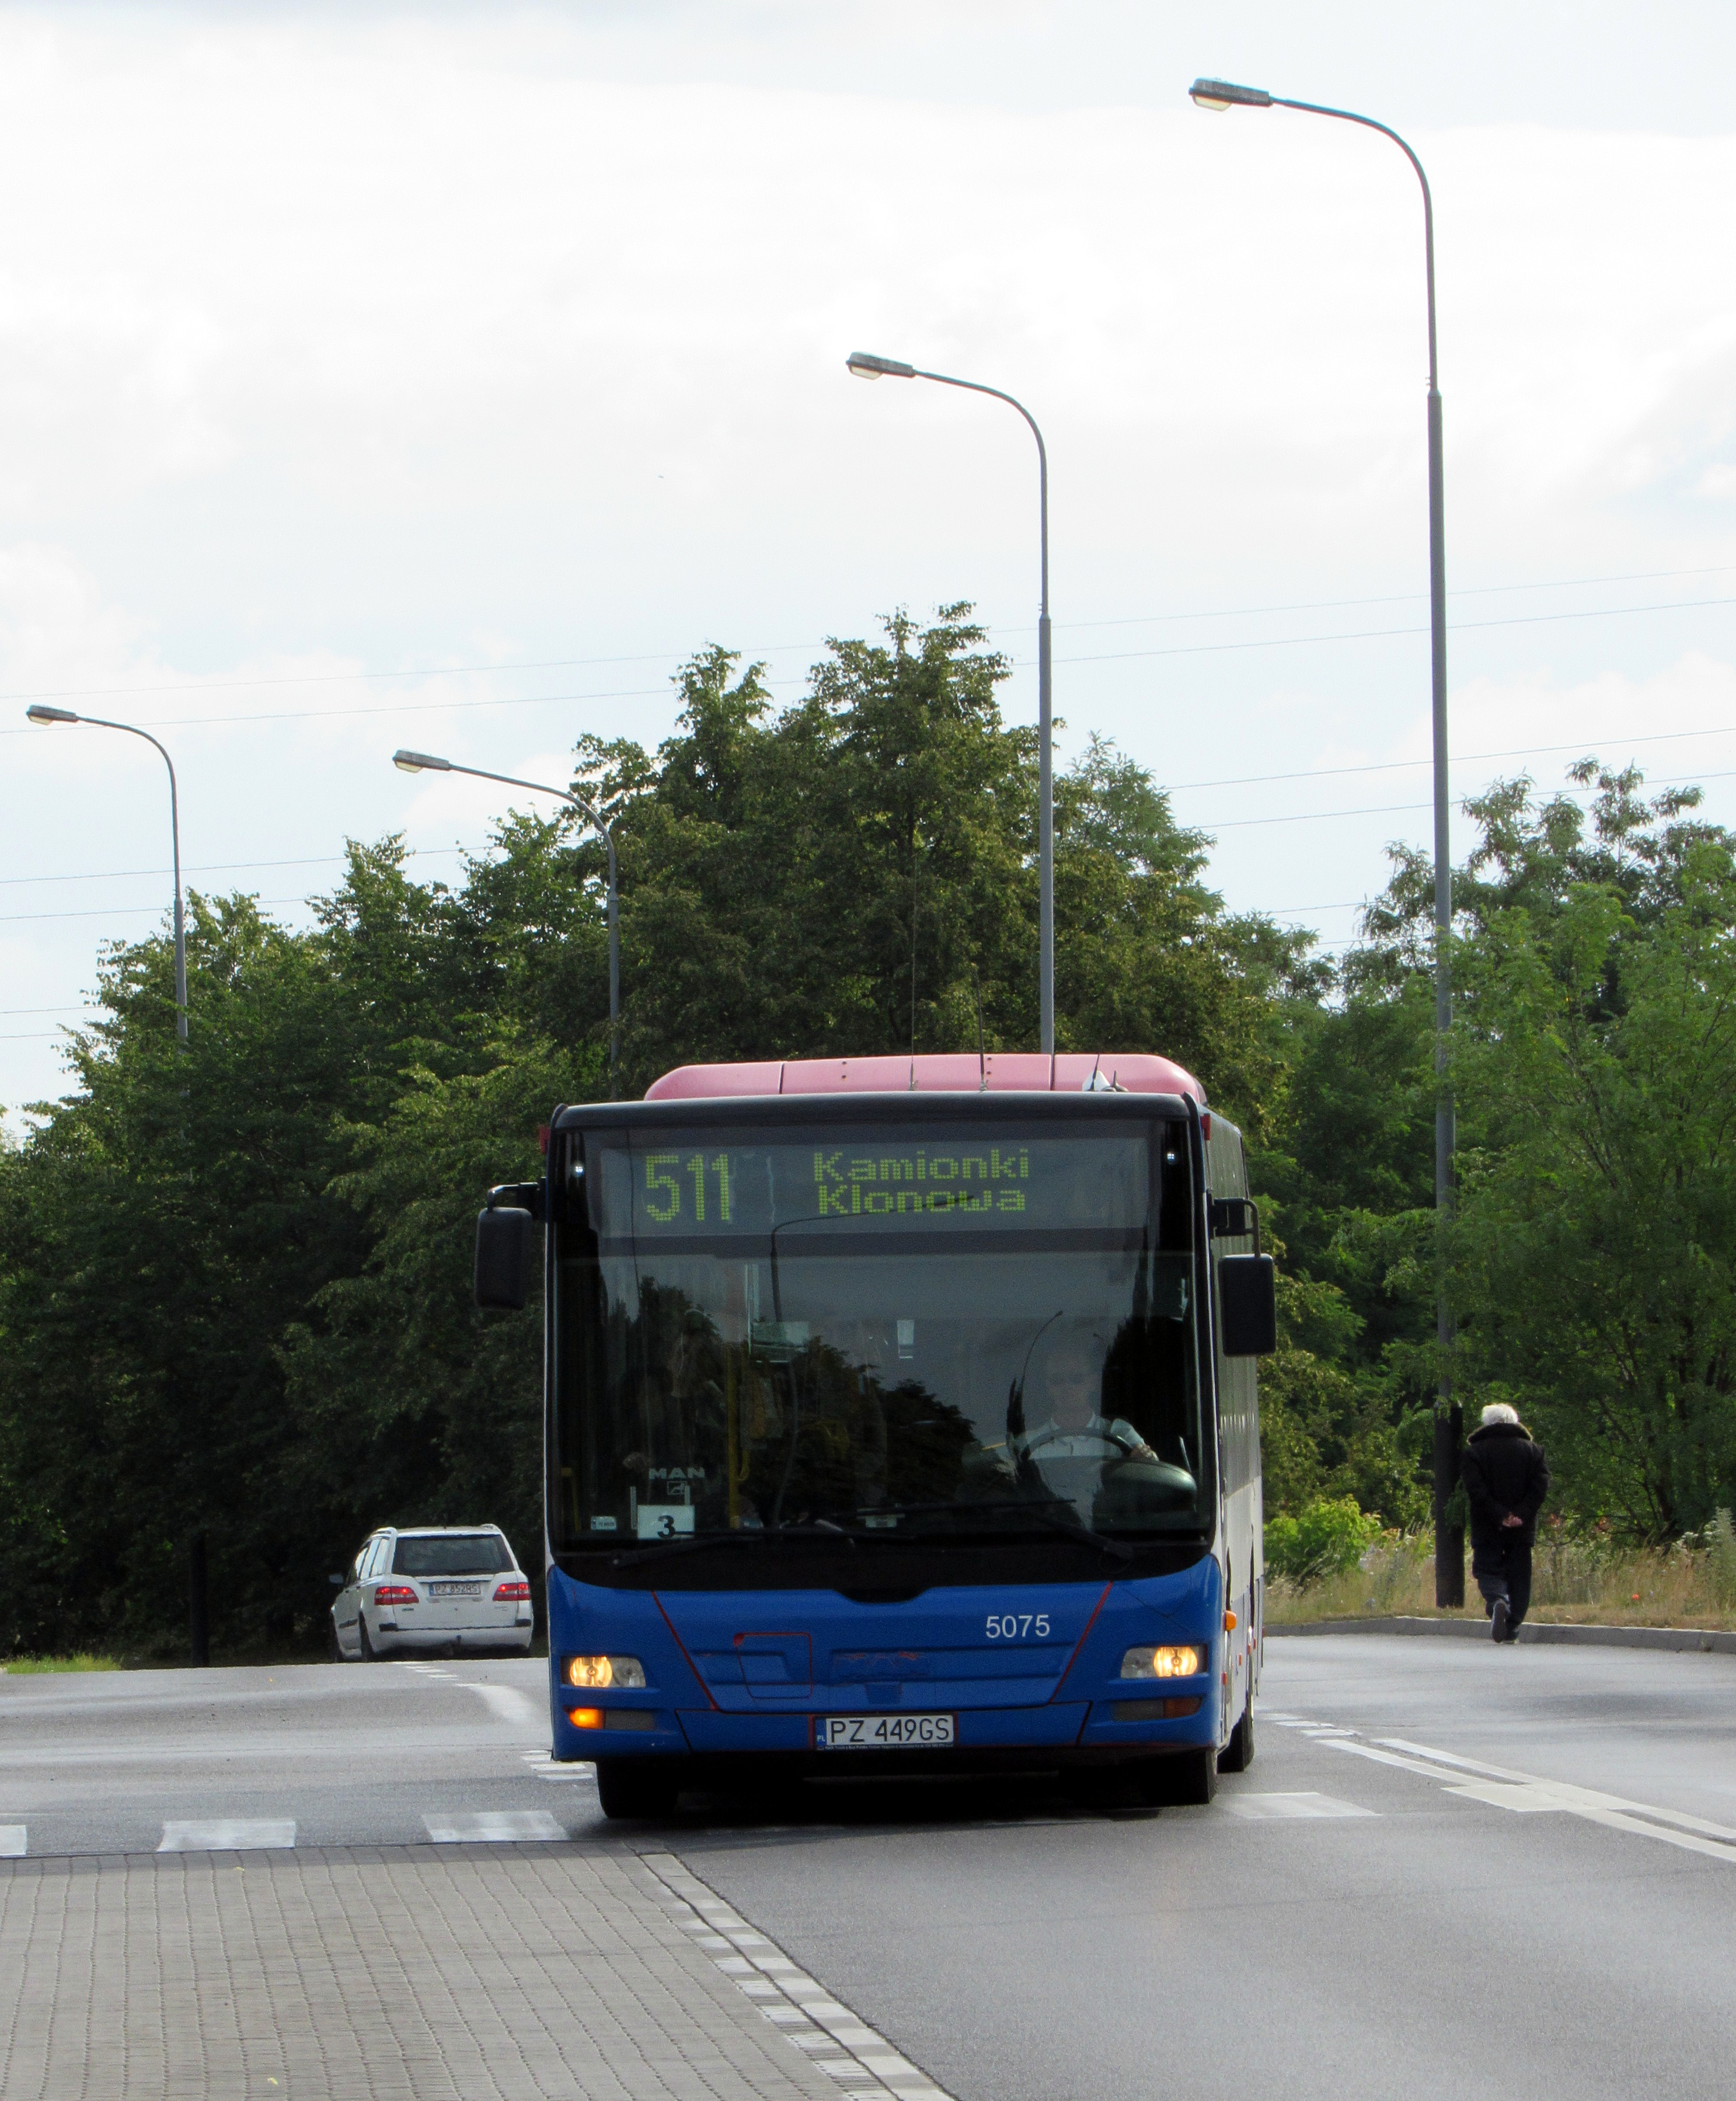 Od 24 stycznia (wtorek) swoją lokalizację zmienią przystanki autobusowe w Pokrzywnie